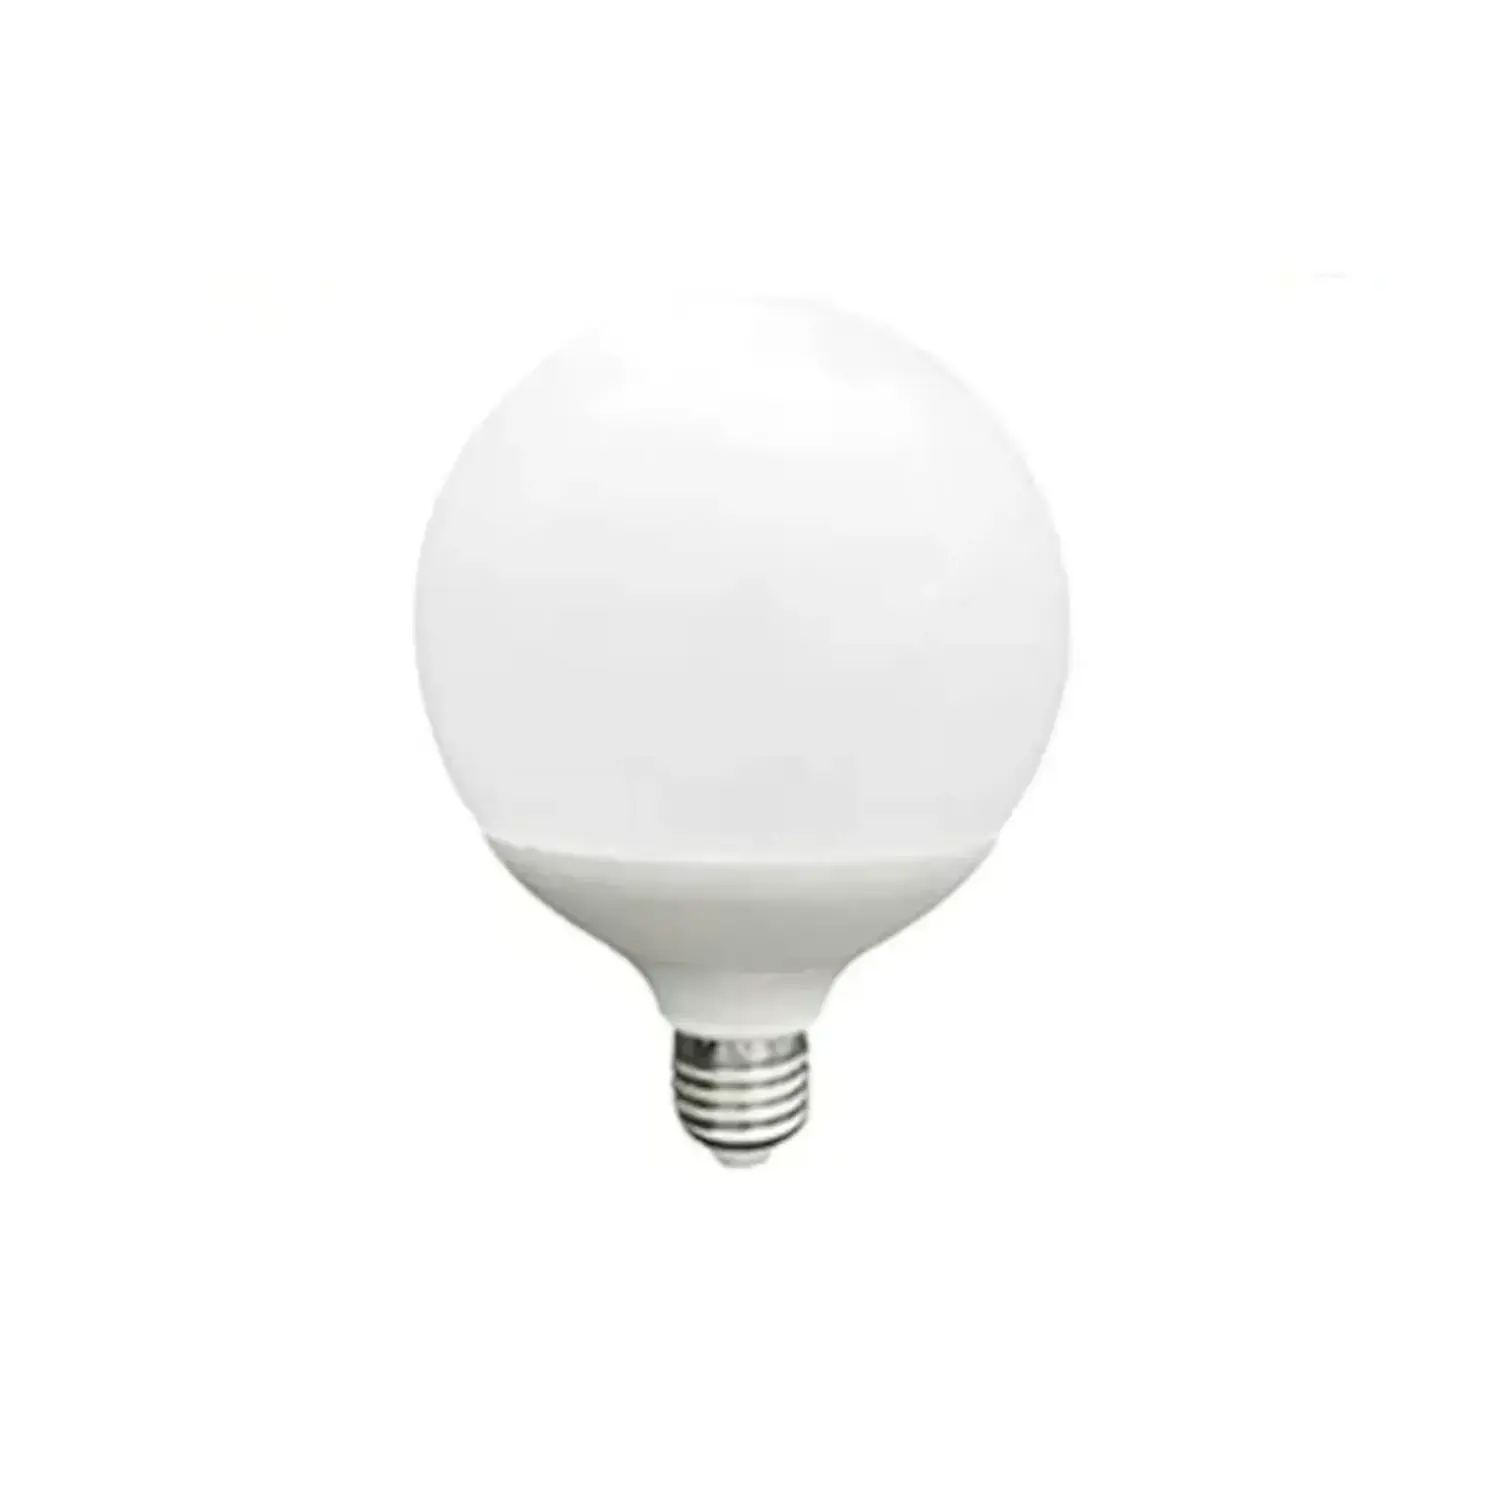 immagine del prodotto lampadina globo lampada led a sfera 120 e27 24 watt bianco freddo